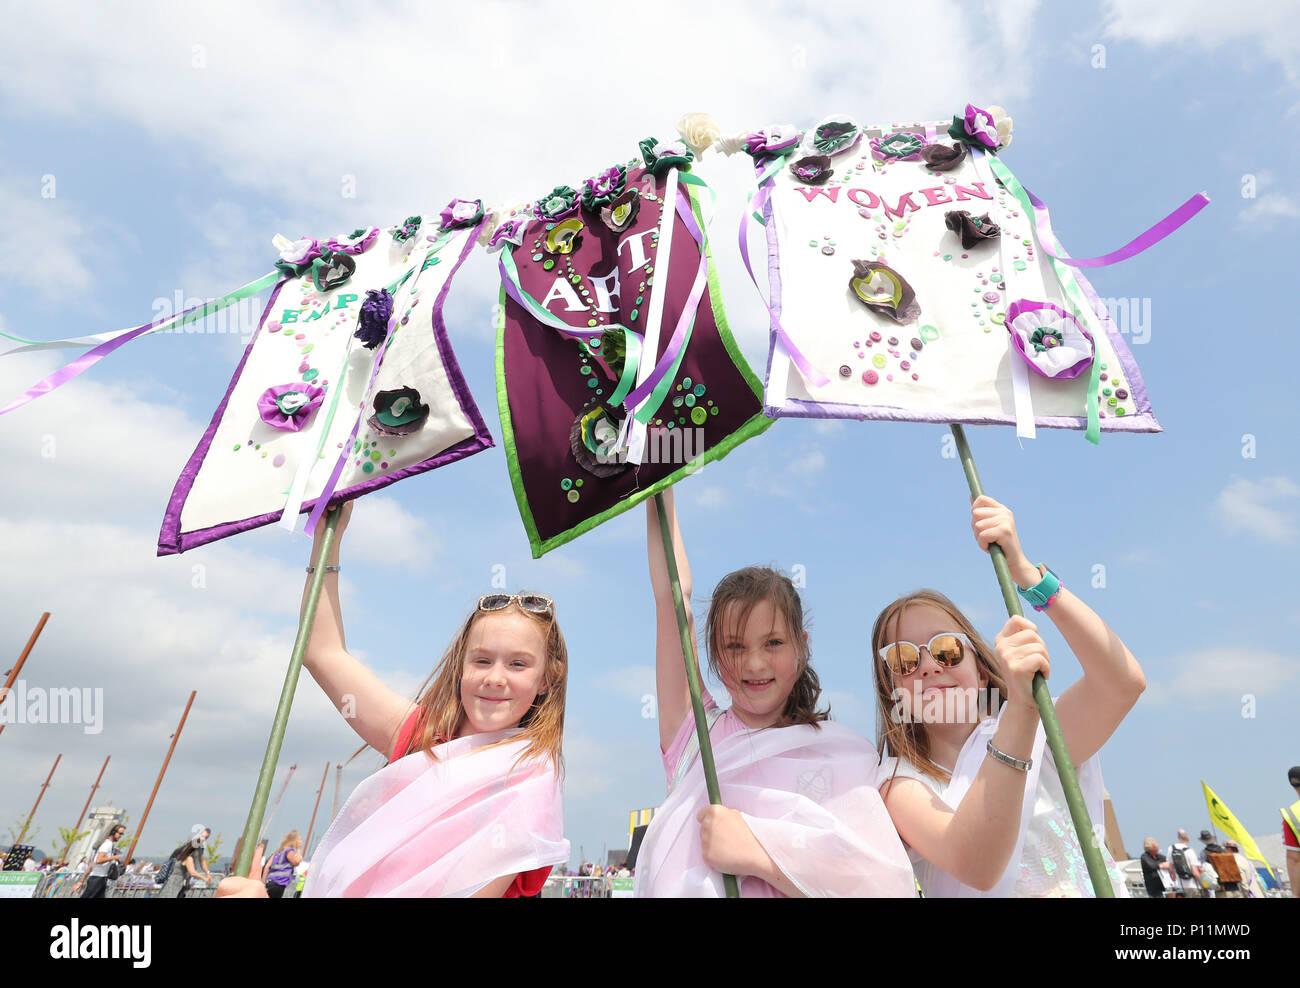 Junge Mädchen mit selbstgemachten Banner nehmen an Artwork die Prozessionen' März, in Belfast, wie vor 100 Jahren, da die Darstellung des Menschen handeln, die der erste britische Frauen gaben das Wahlrecht für ein öffentliches Amt stand und markieren. Stockfoto